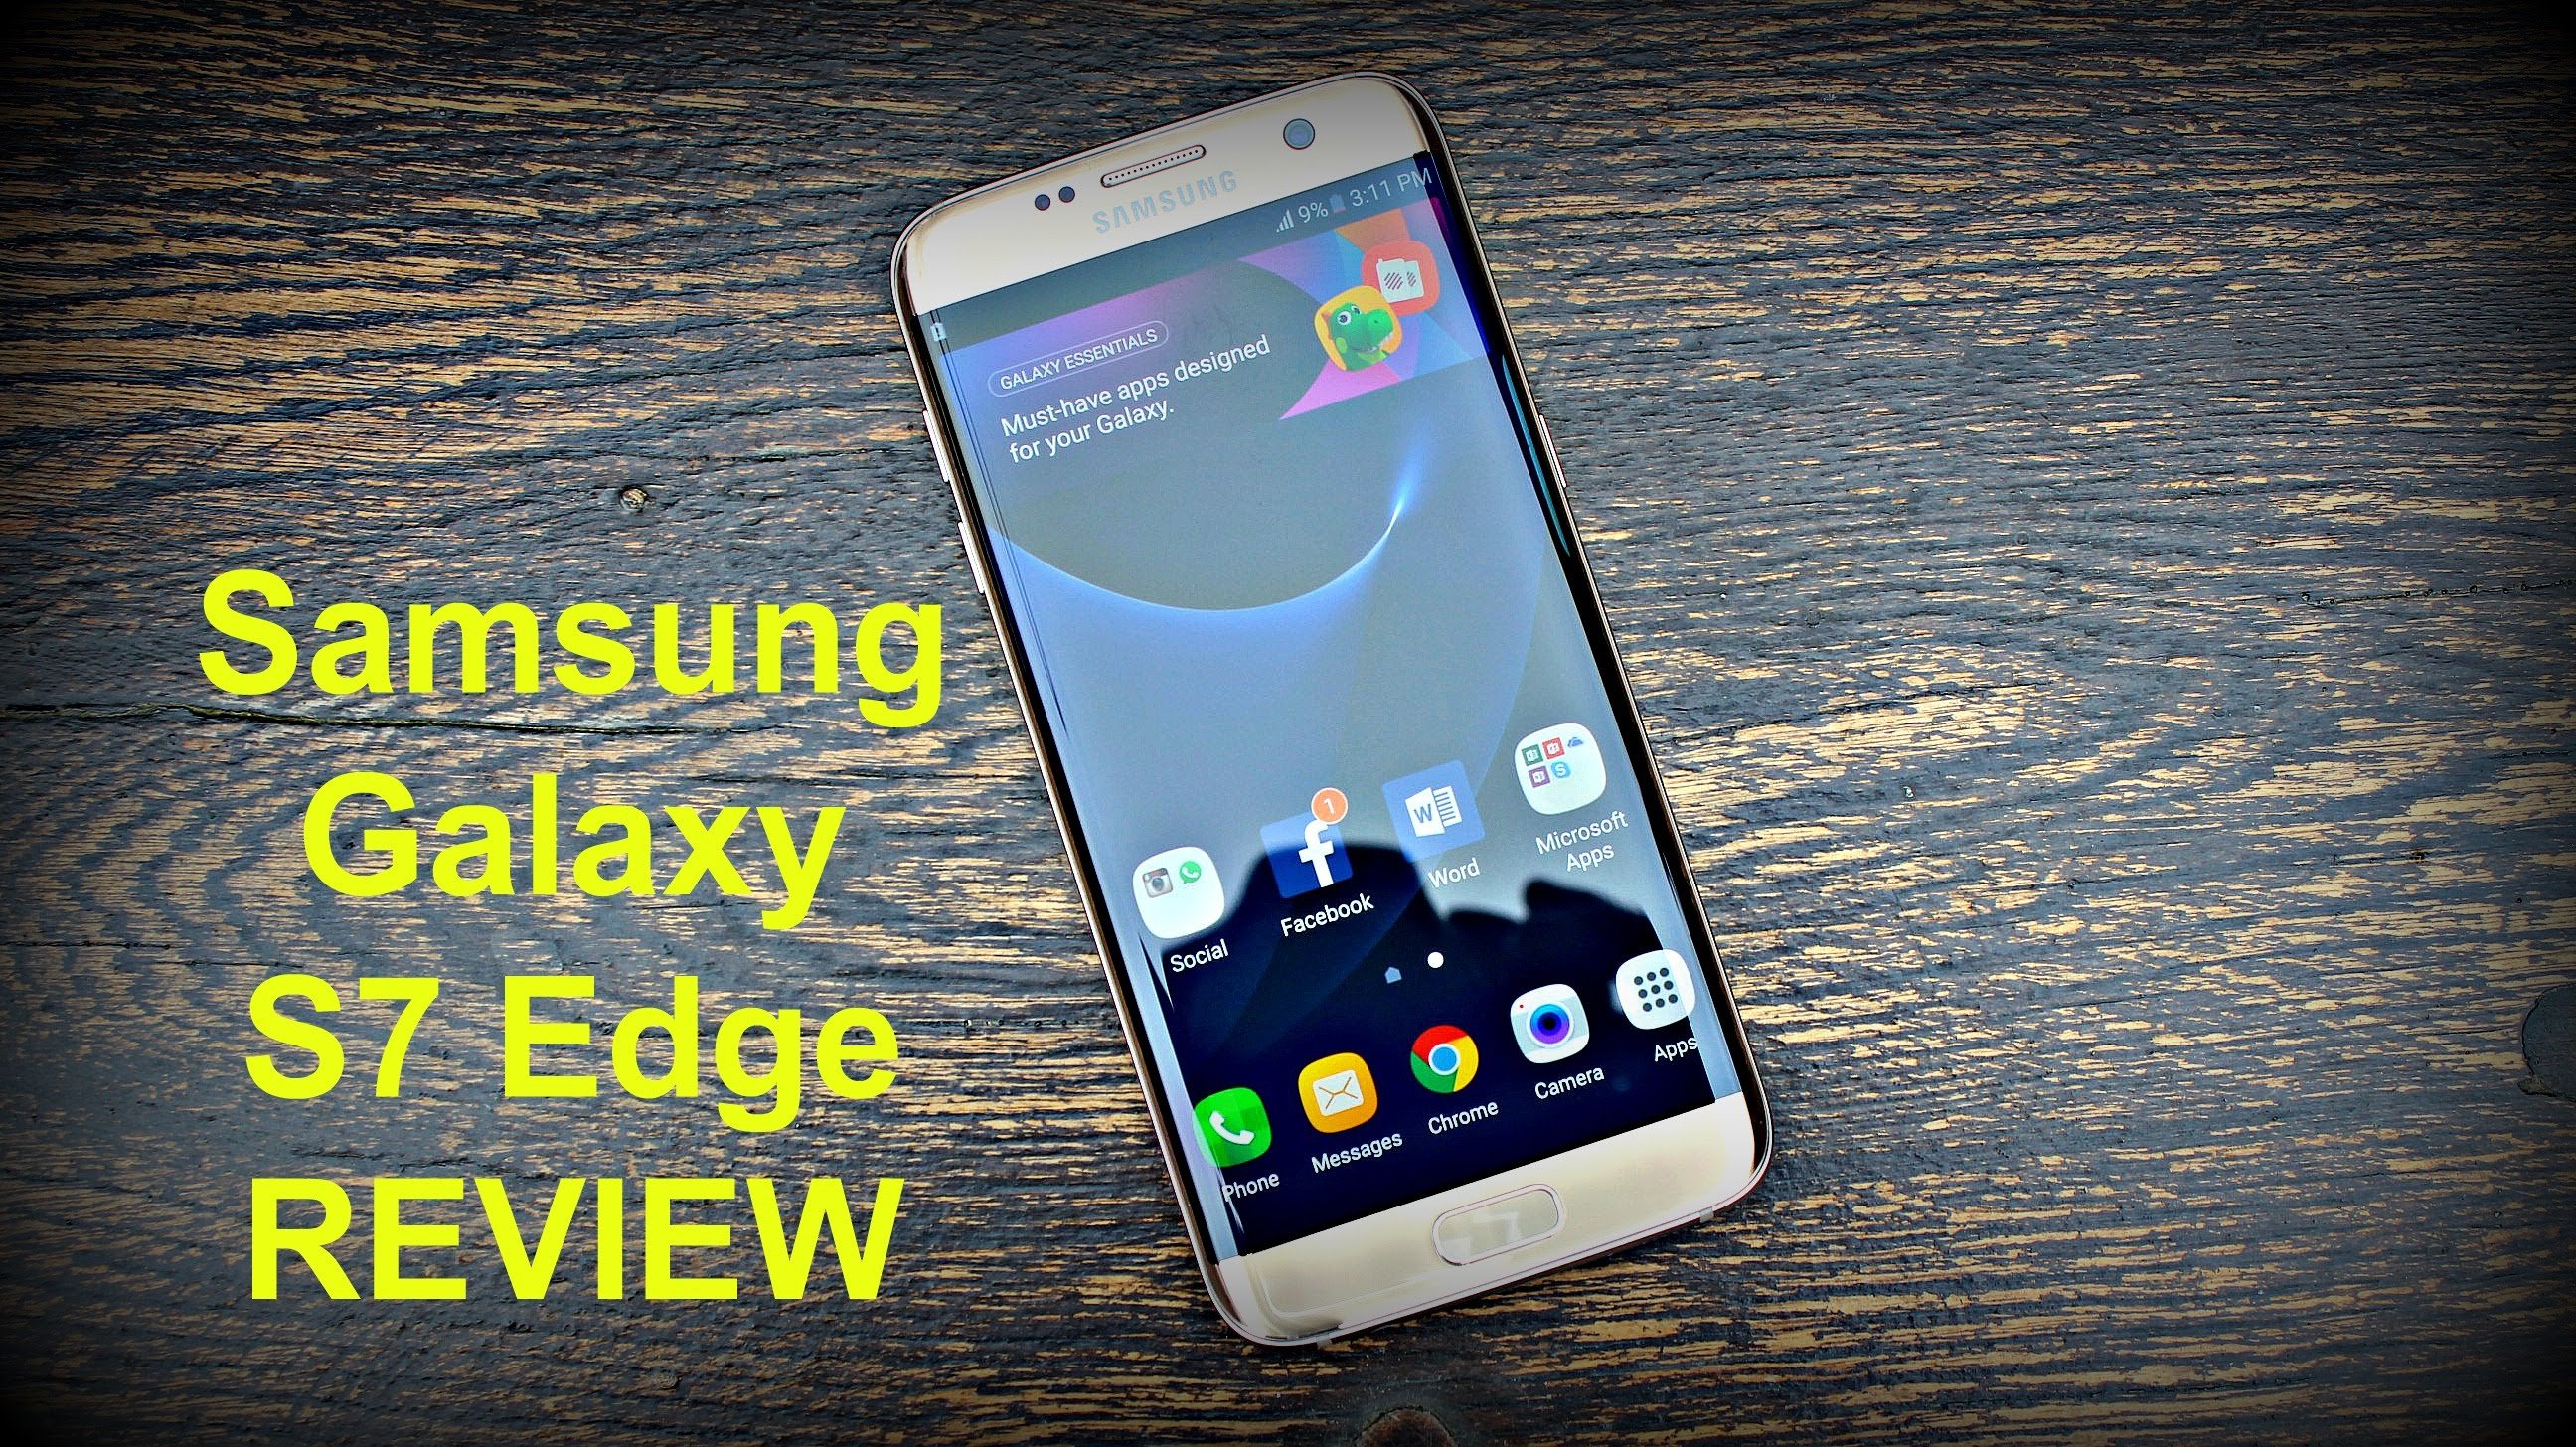 Ontrouw verslag doen van is genoeg Samsung Galaxy S7 Edge Review: The Best Smartphone Ever? - Gizmochina